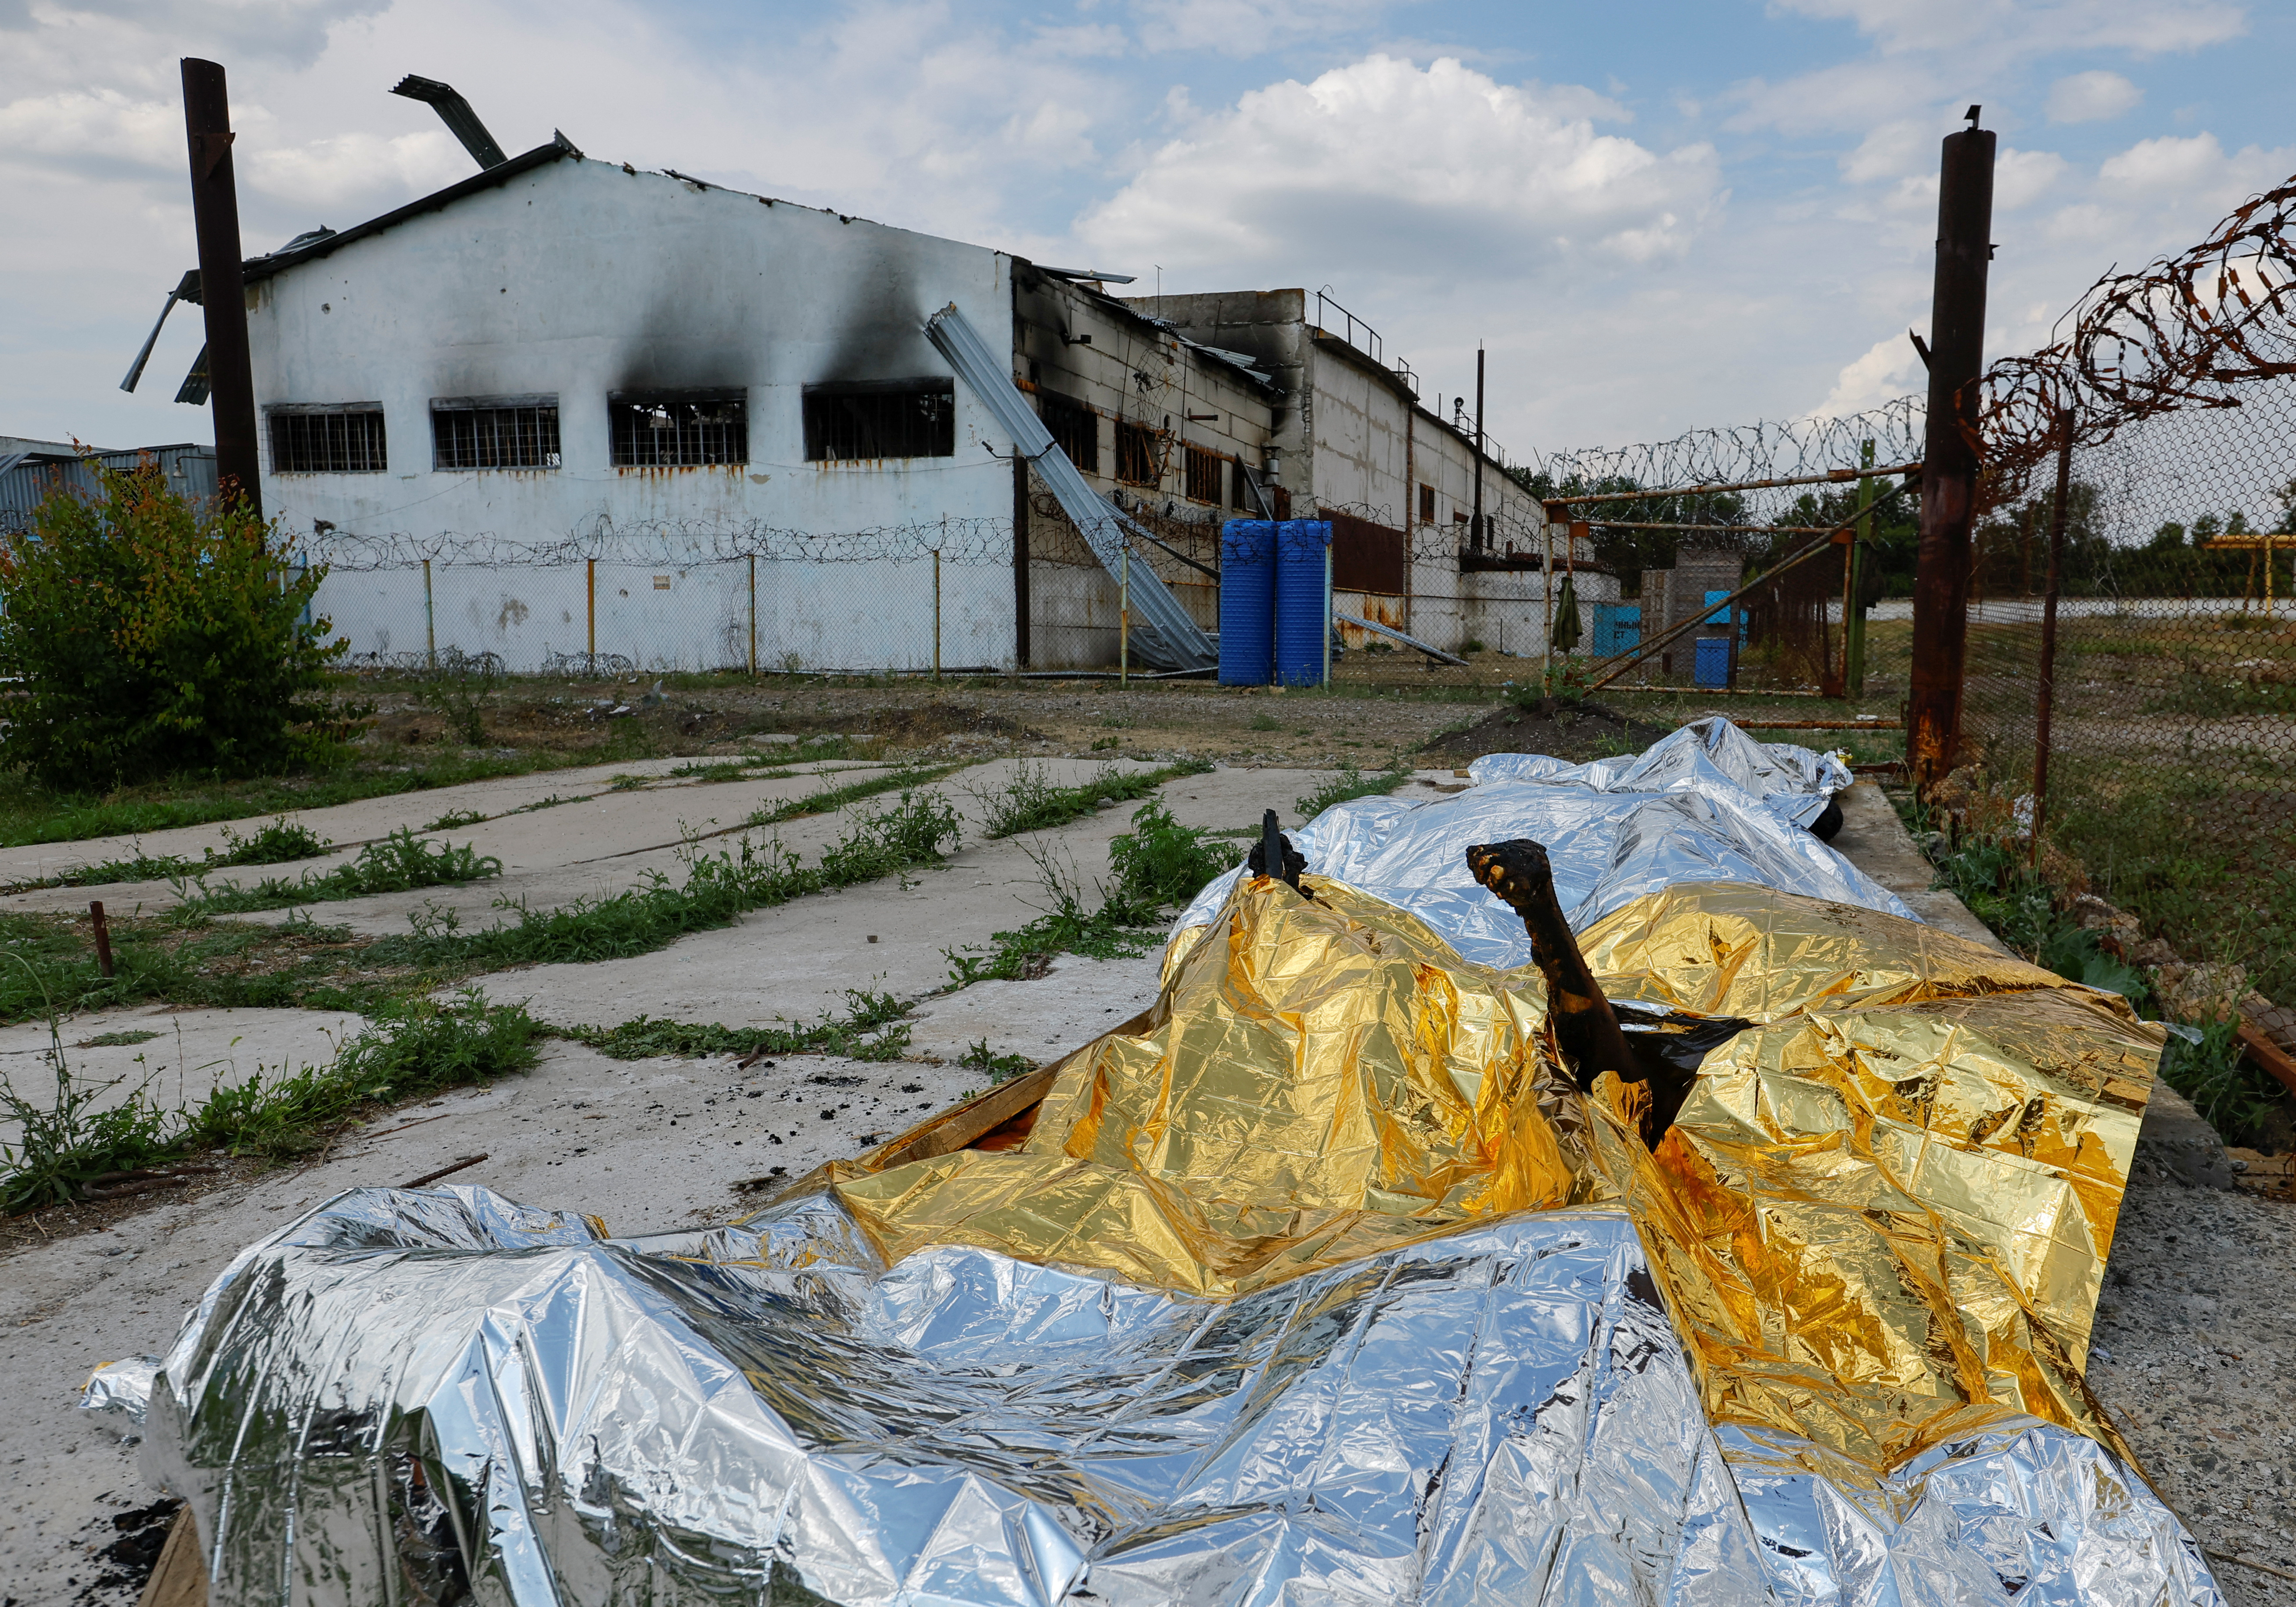 IMÁGENES SENSIBLES: Cuerpos quemados de detenidos yacen cubiertos tras el bombardeo en un centro de detención preventiva en el curso del conflicto entre Ucrania y Rusia, en el asentamiento de Olenivka en la región de Donetsk, Ucrania 29 de mayo de 2022. REUTERS/Alexander Ermochenko